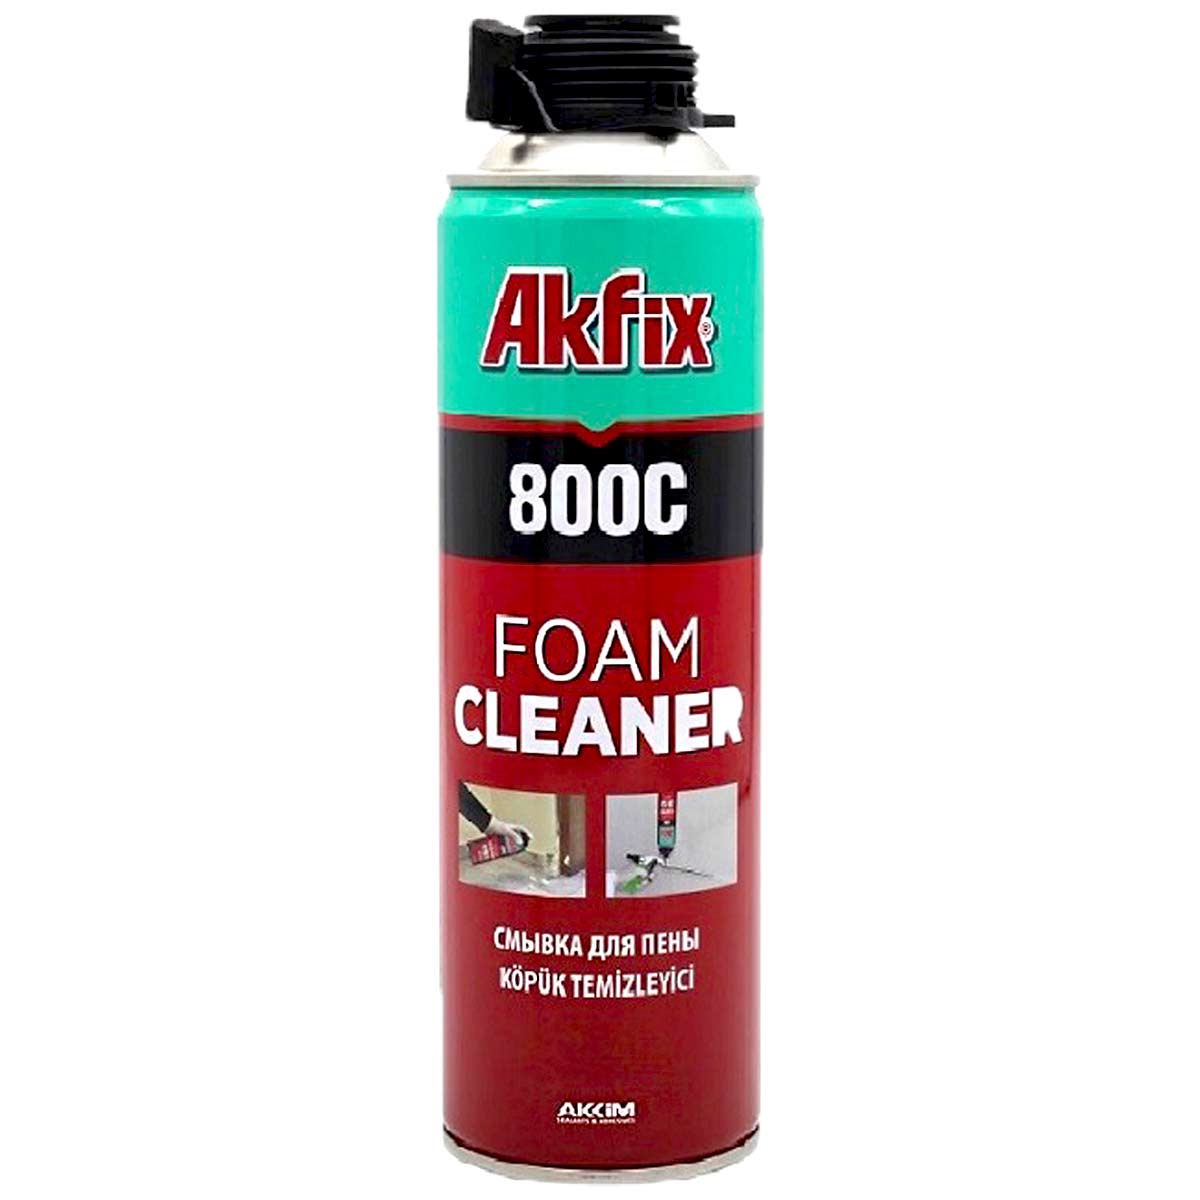 اسپری فوم کلینر آکفیکس AKFIX Foam Cleaner 800C